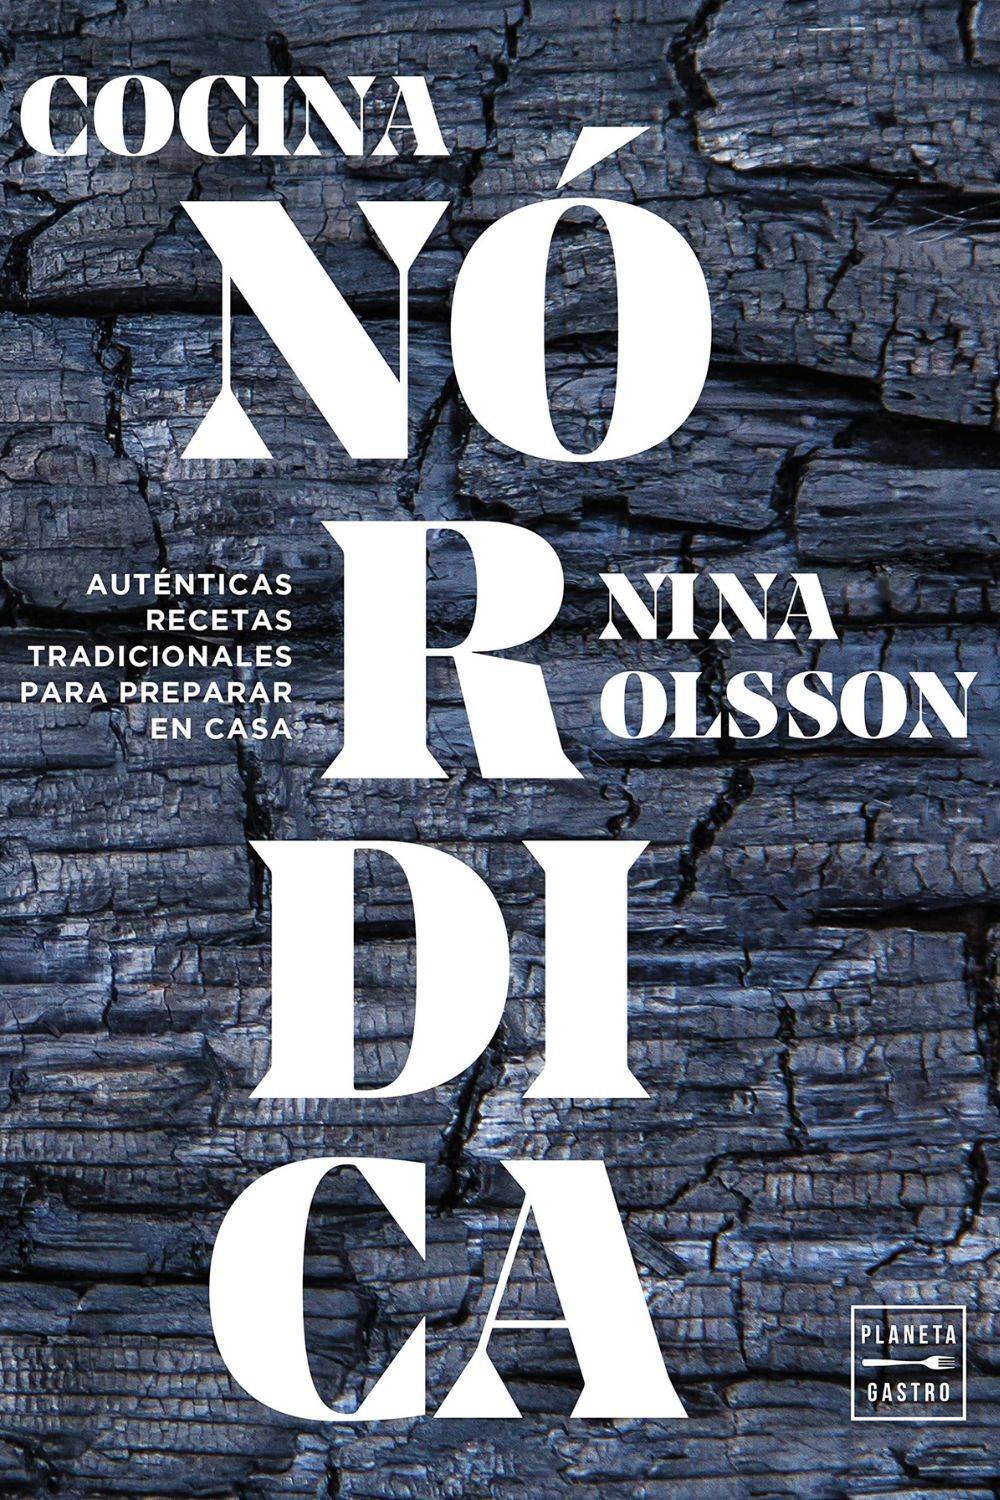 Libros prácticos: ‘Cocina nórdica’ de Nina Olsson